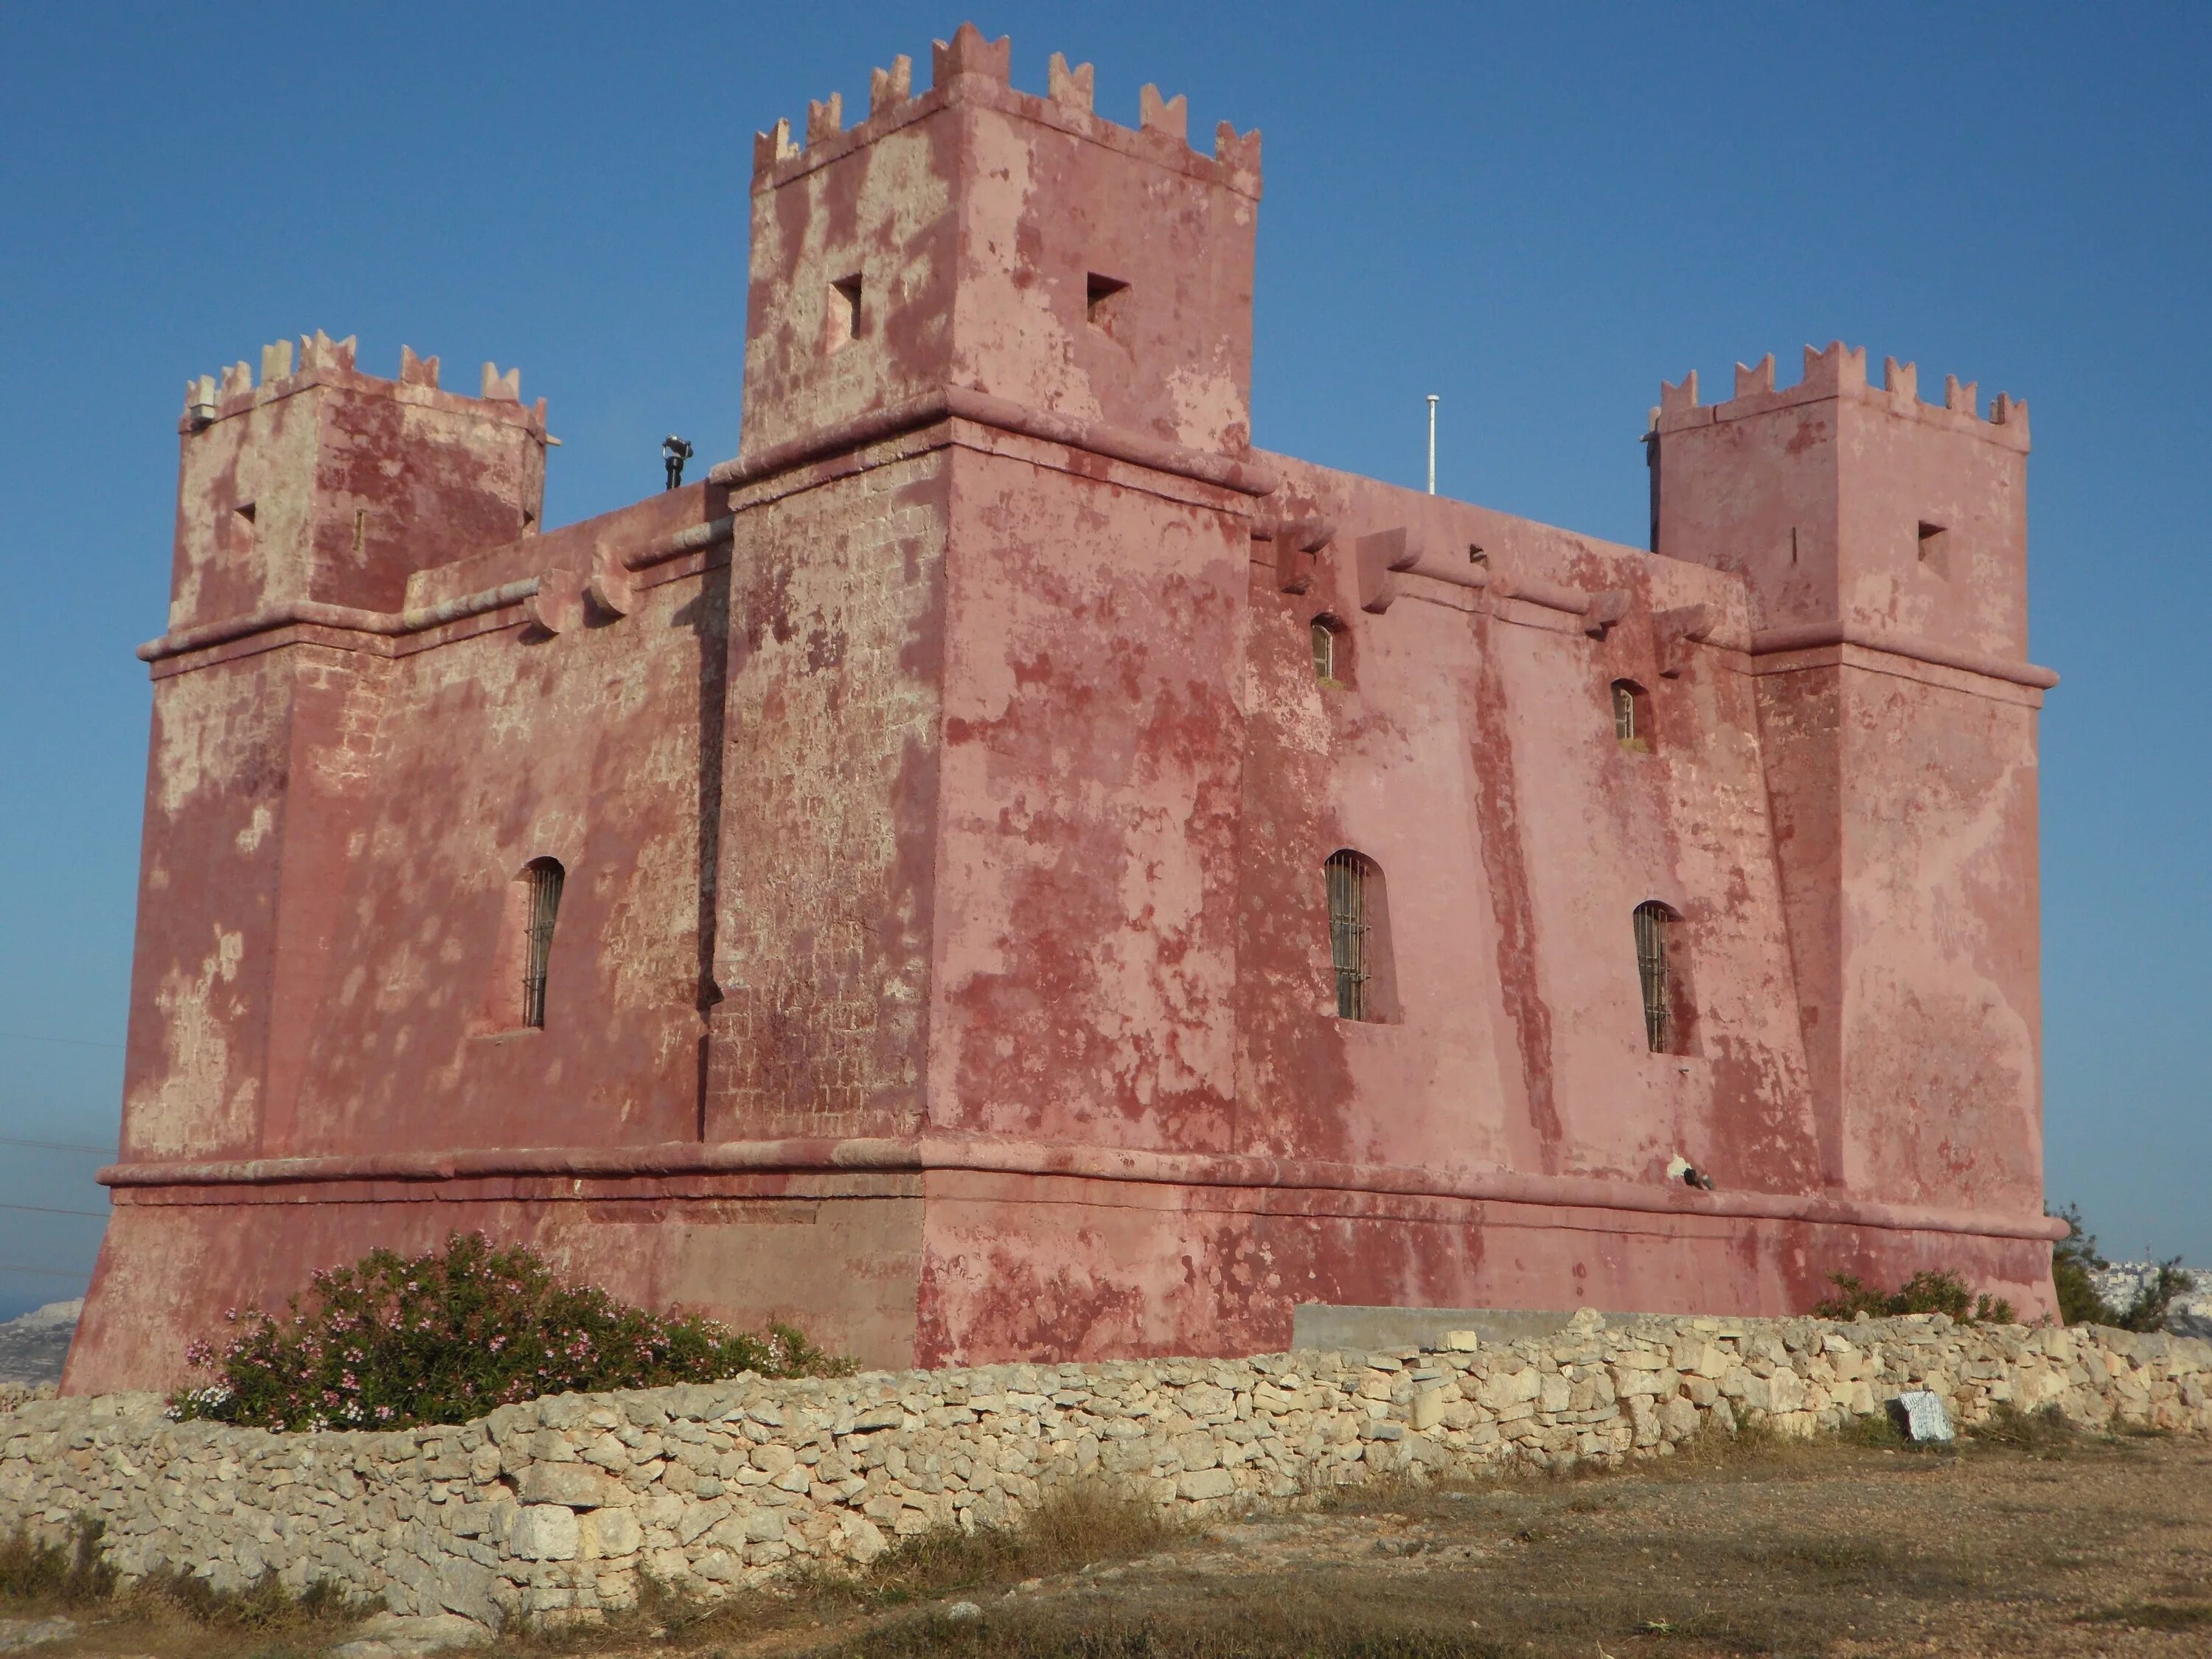 Fortress building. Андалузская крепость красный замок.